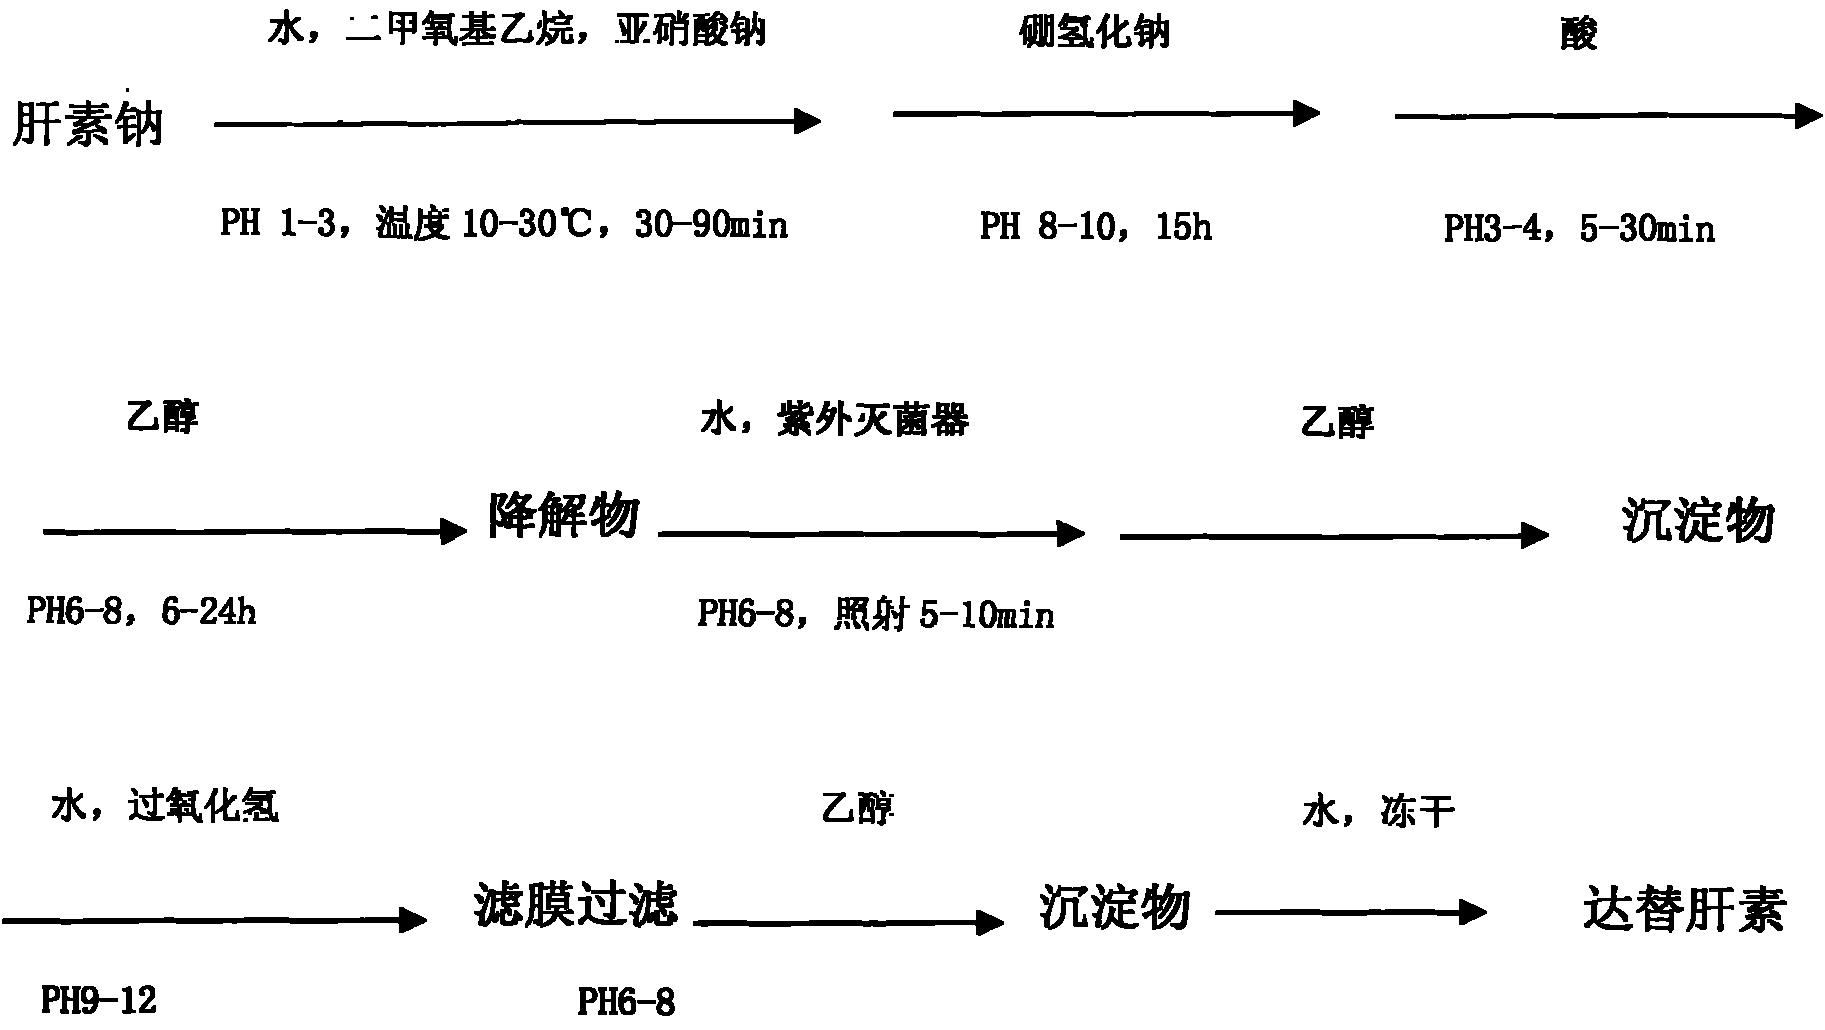 Production method of dalteparin sodium